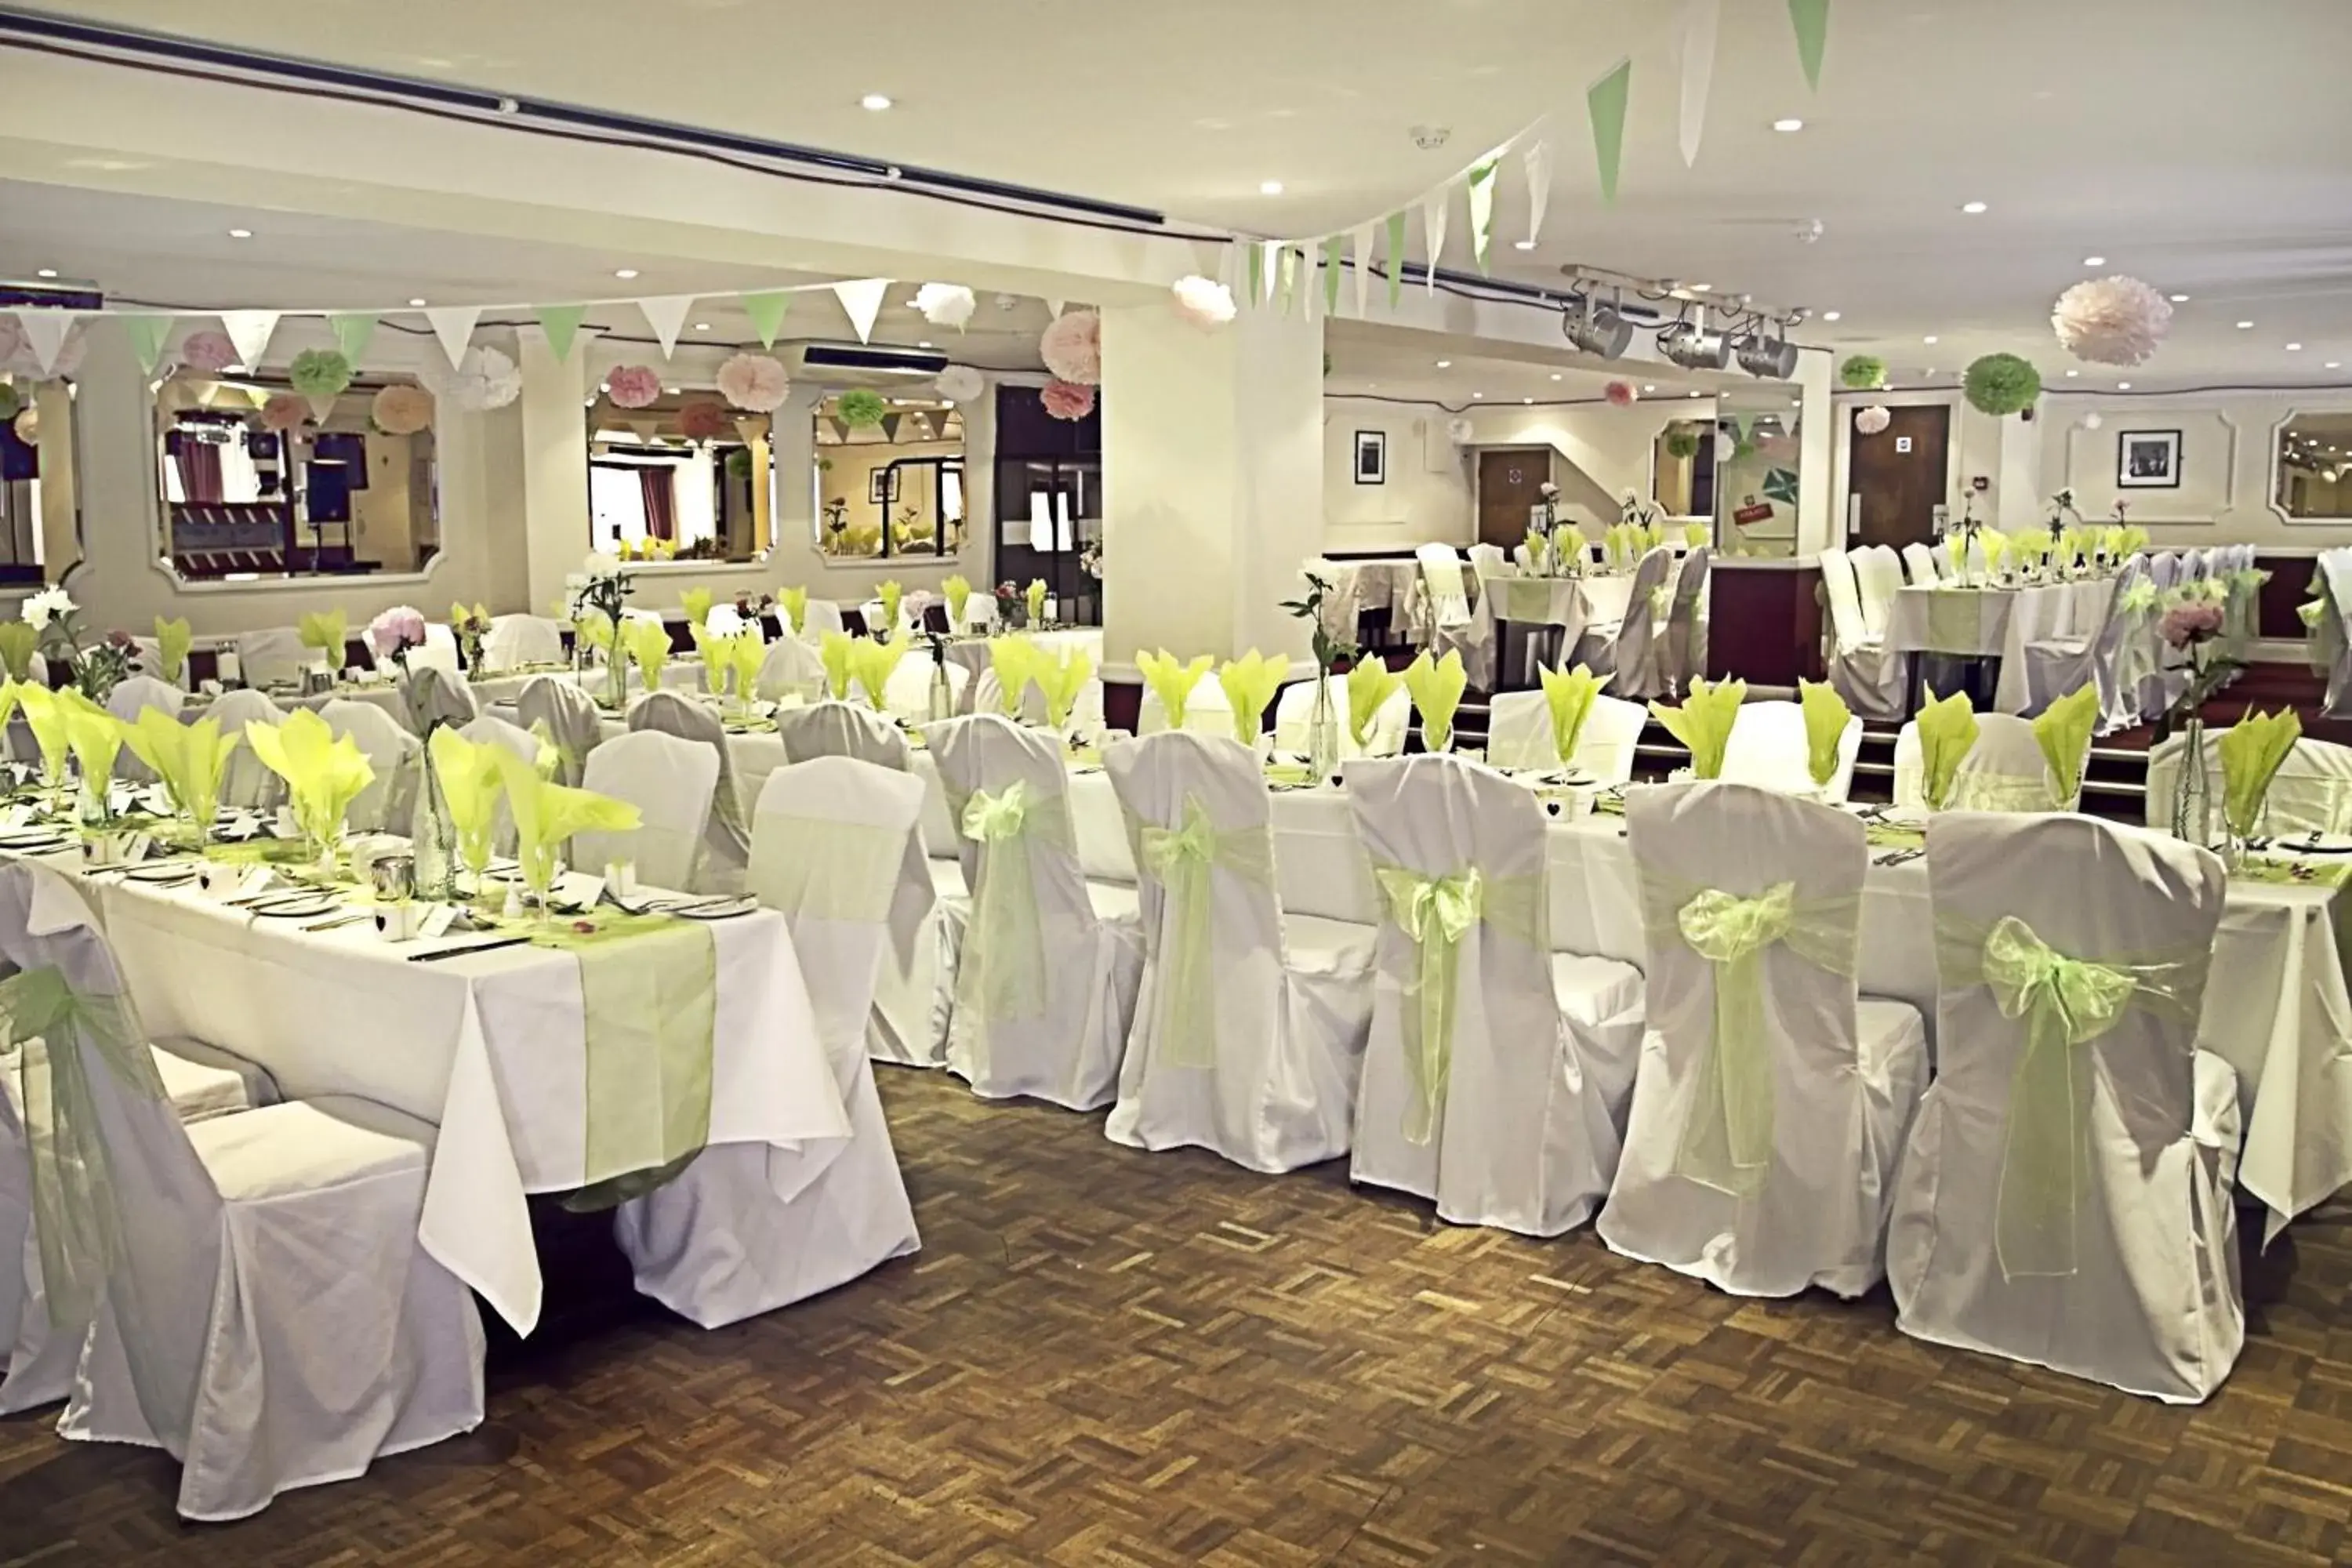 Banquet/Function facilities, Banquet Facilities in Afton Hotel